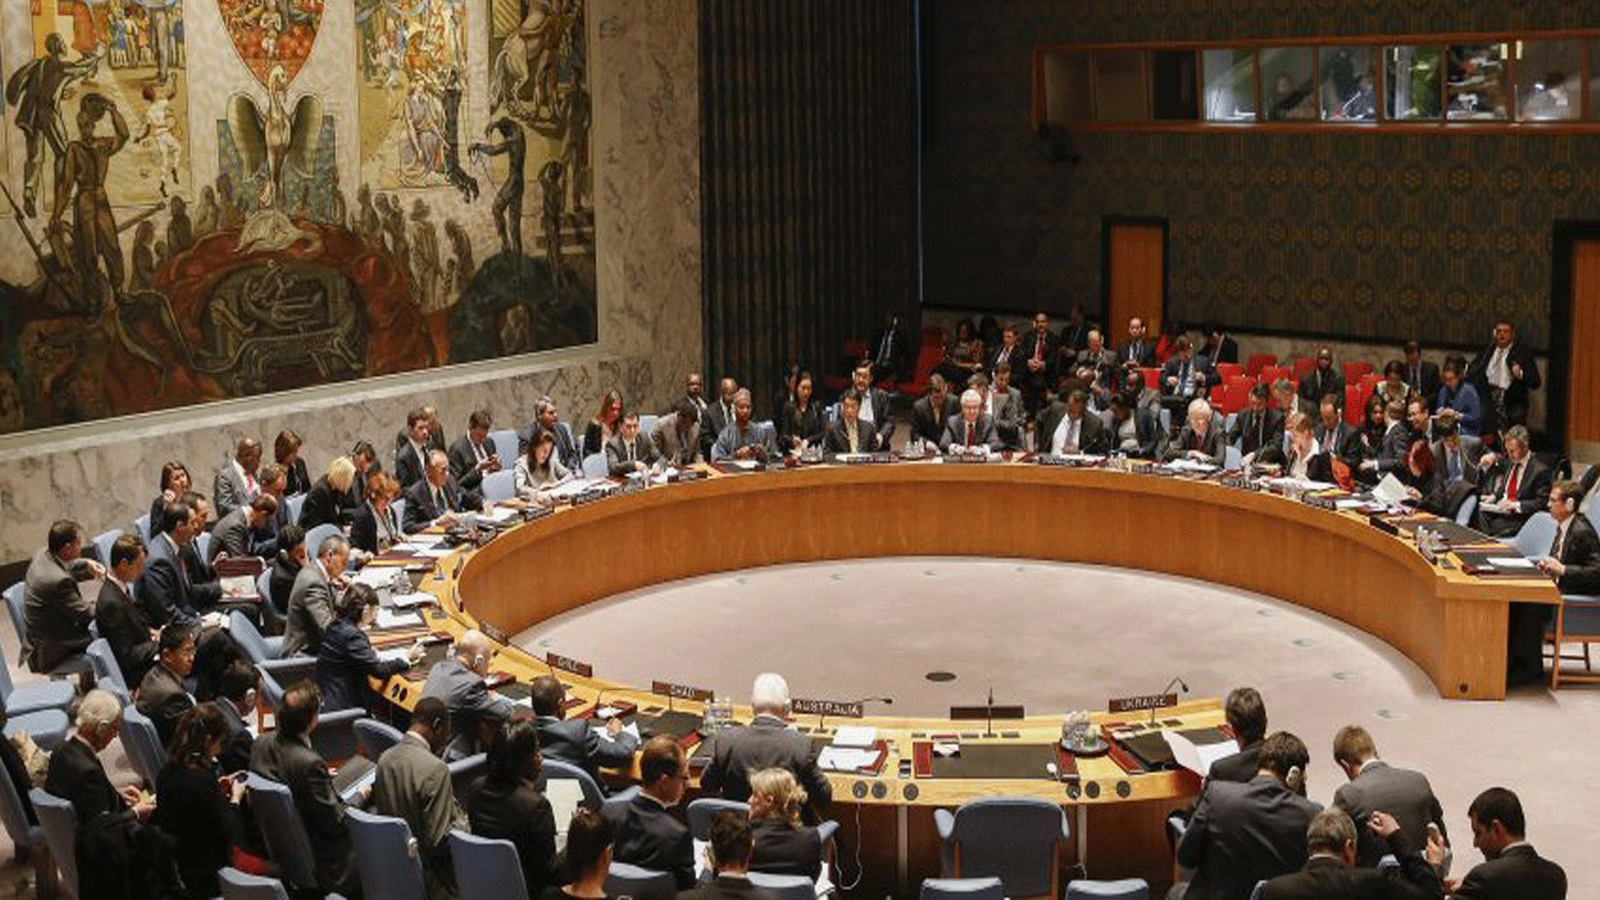 الولايات المتحدة طلبت عقد اجتماع مفتوح لمجلس الأمن الدولي لمعالجة الأزمة في أوكرانيا بنتيجة 